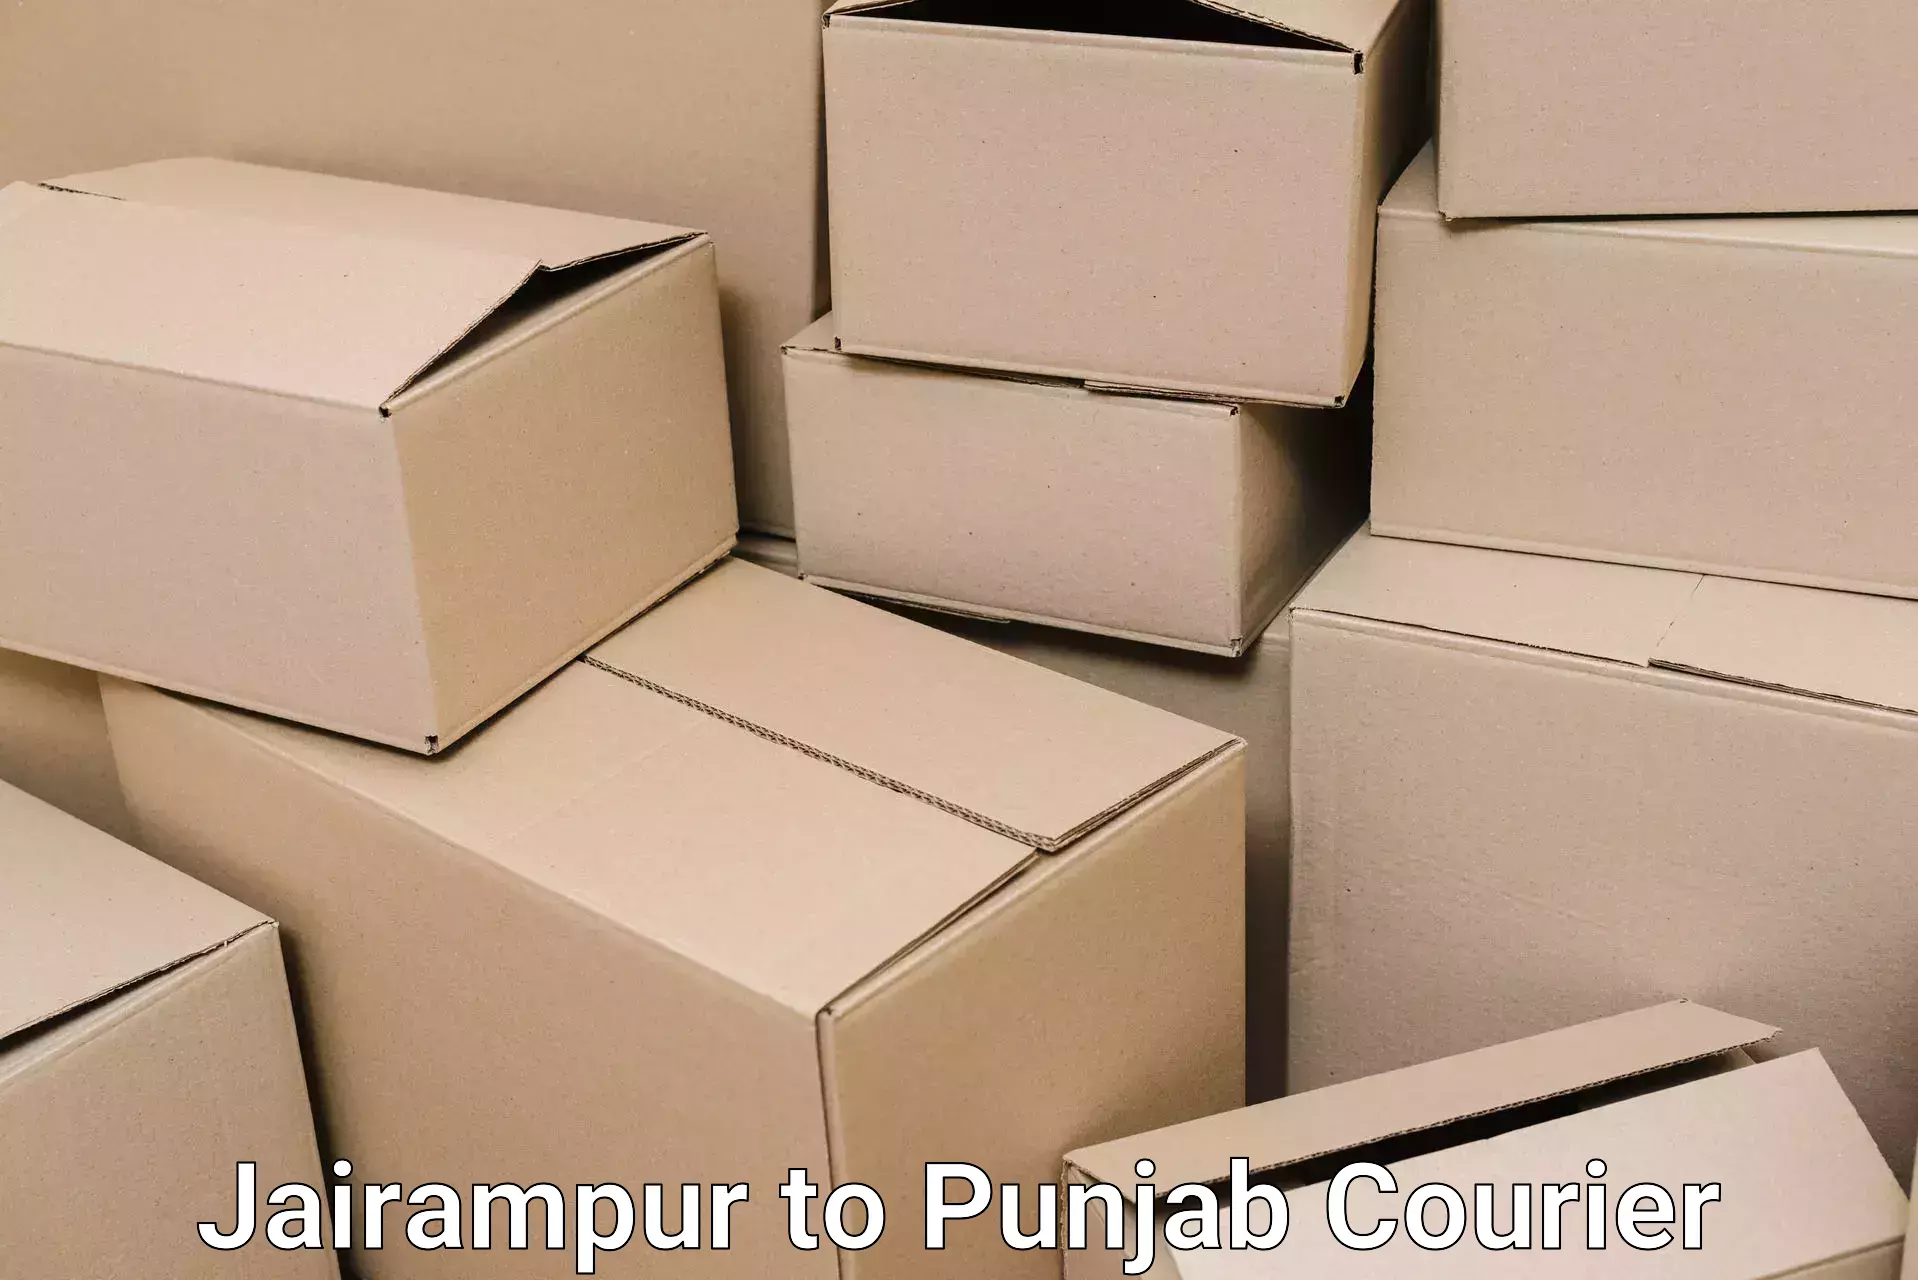 Full-service furniture transport Jairampur to Punjab